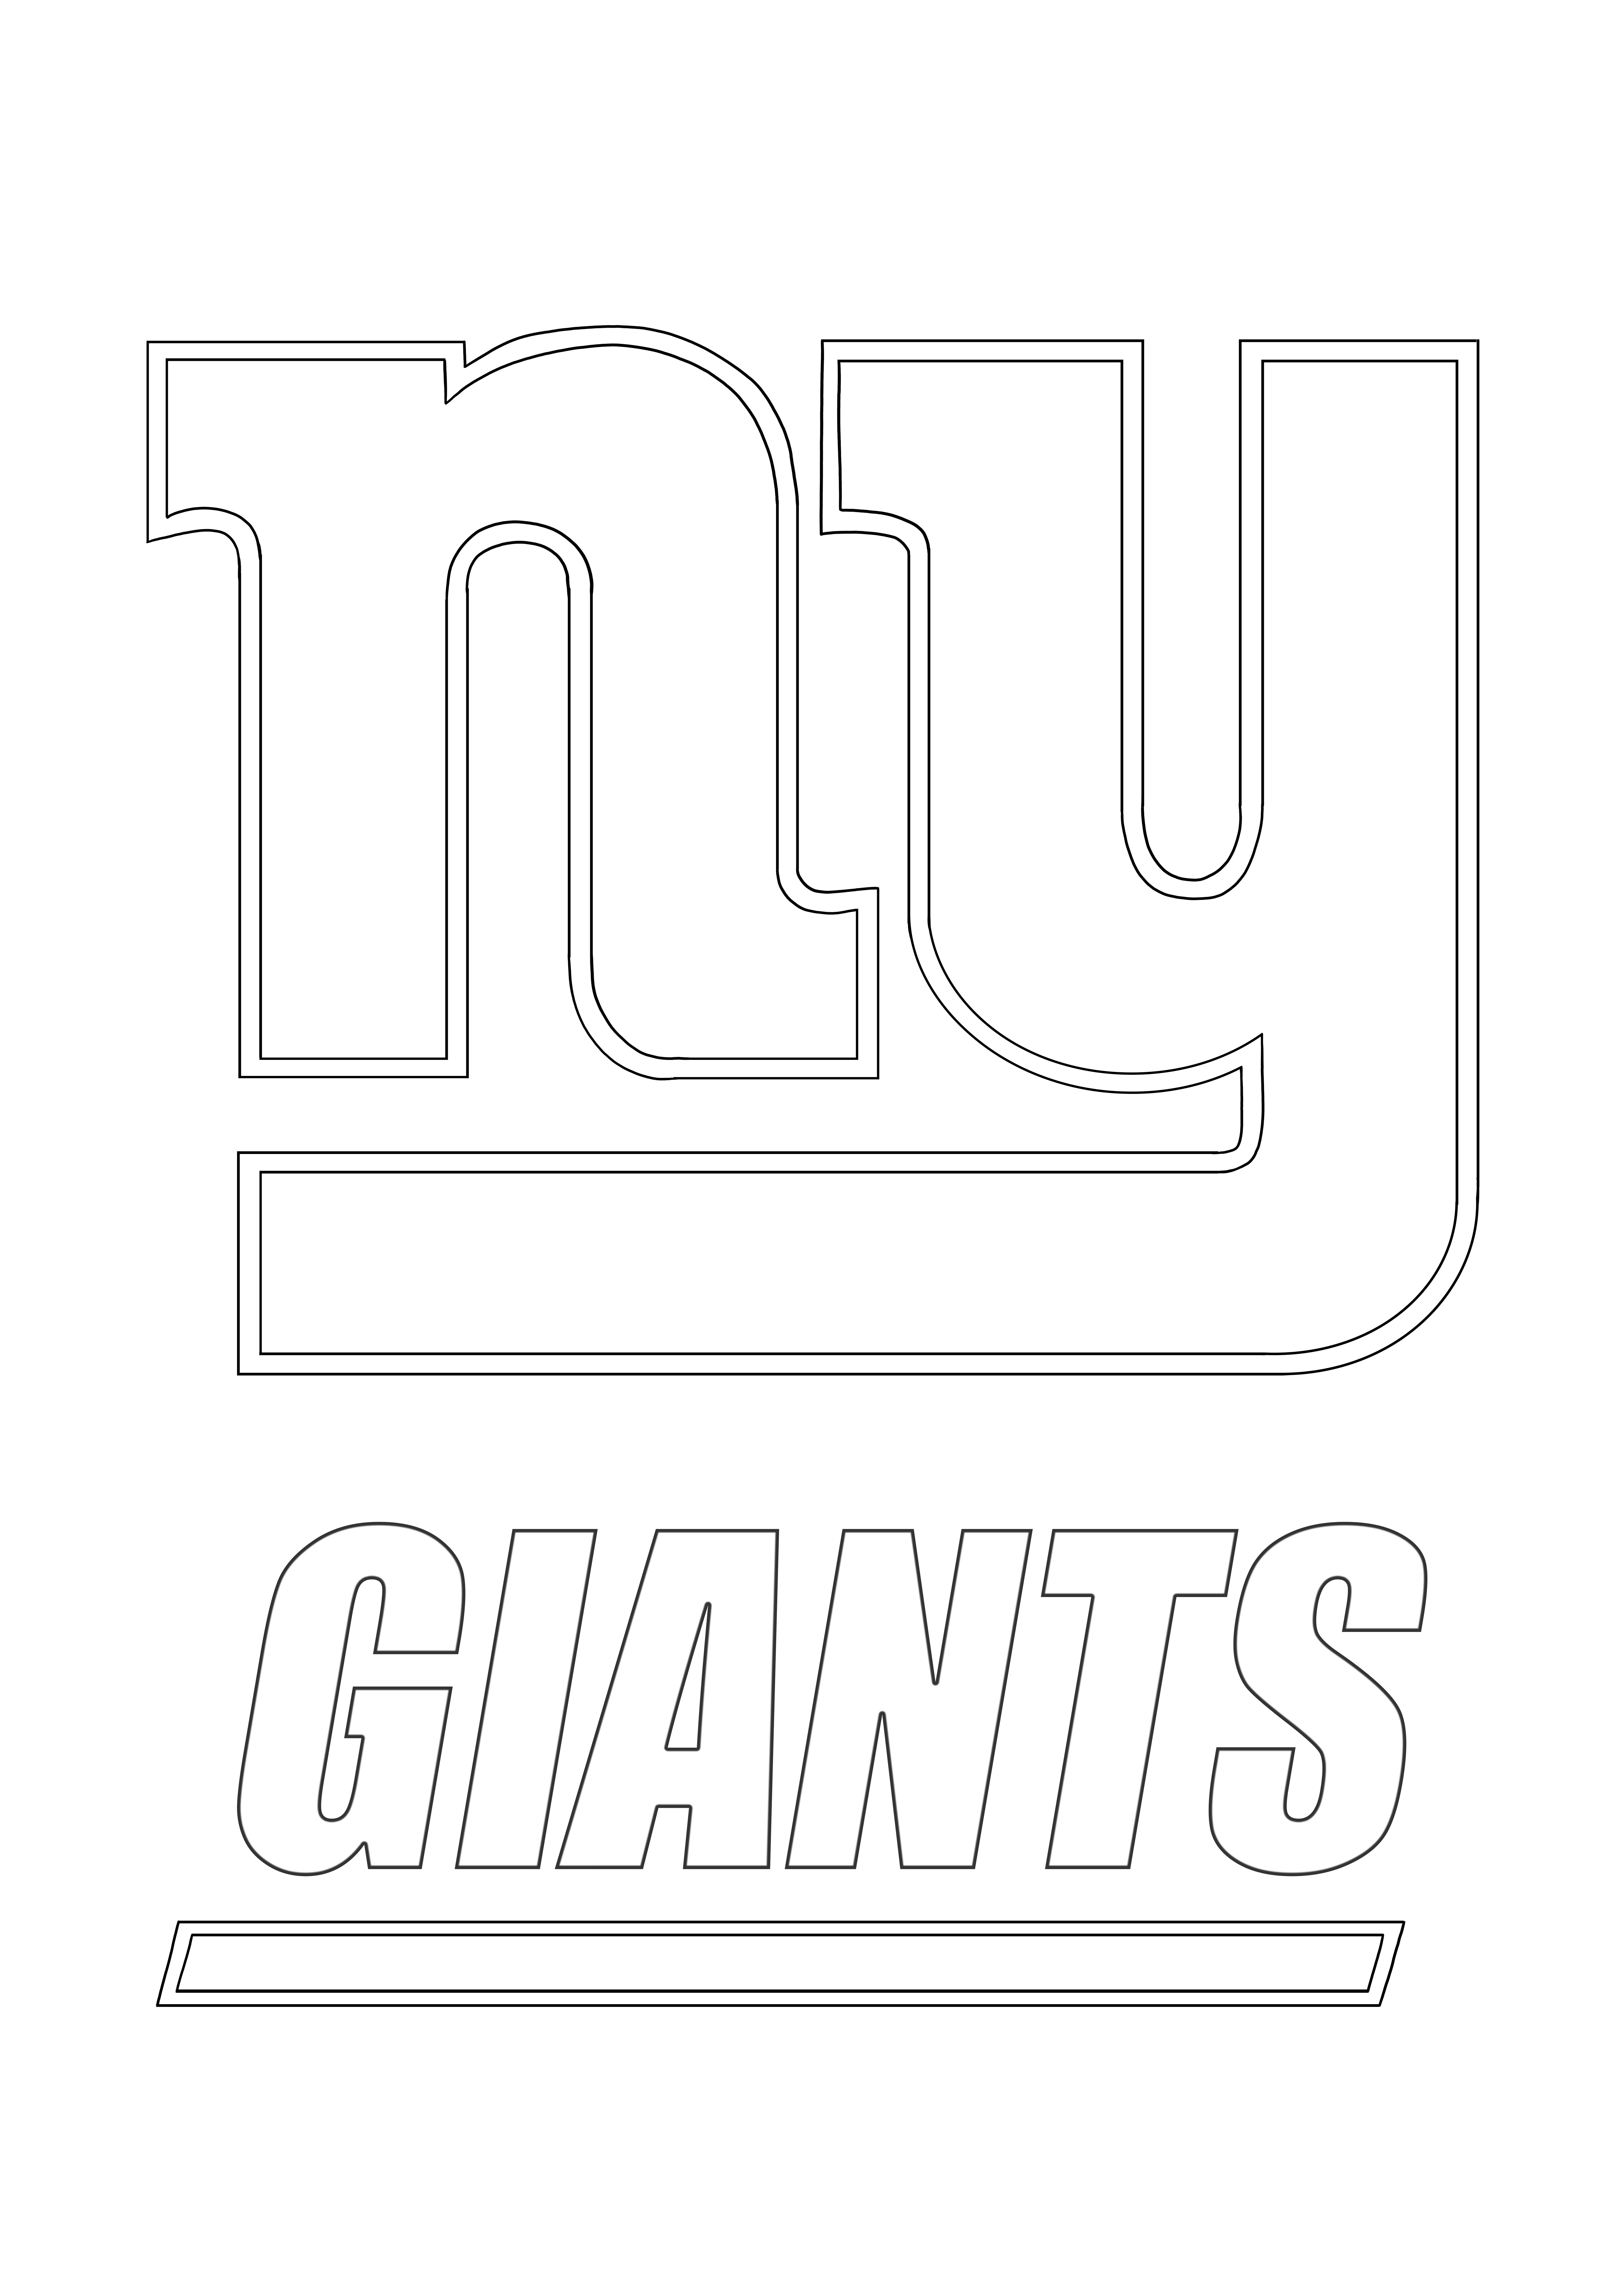 Coloriage et feuille à imprimer gratuits du logo des Giants de New York préférés